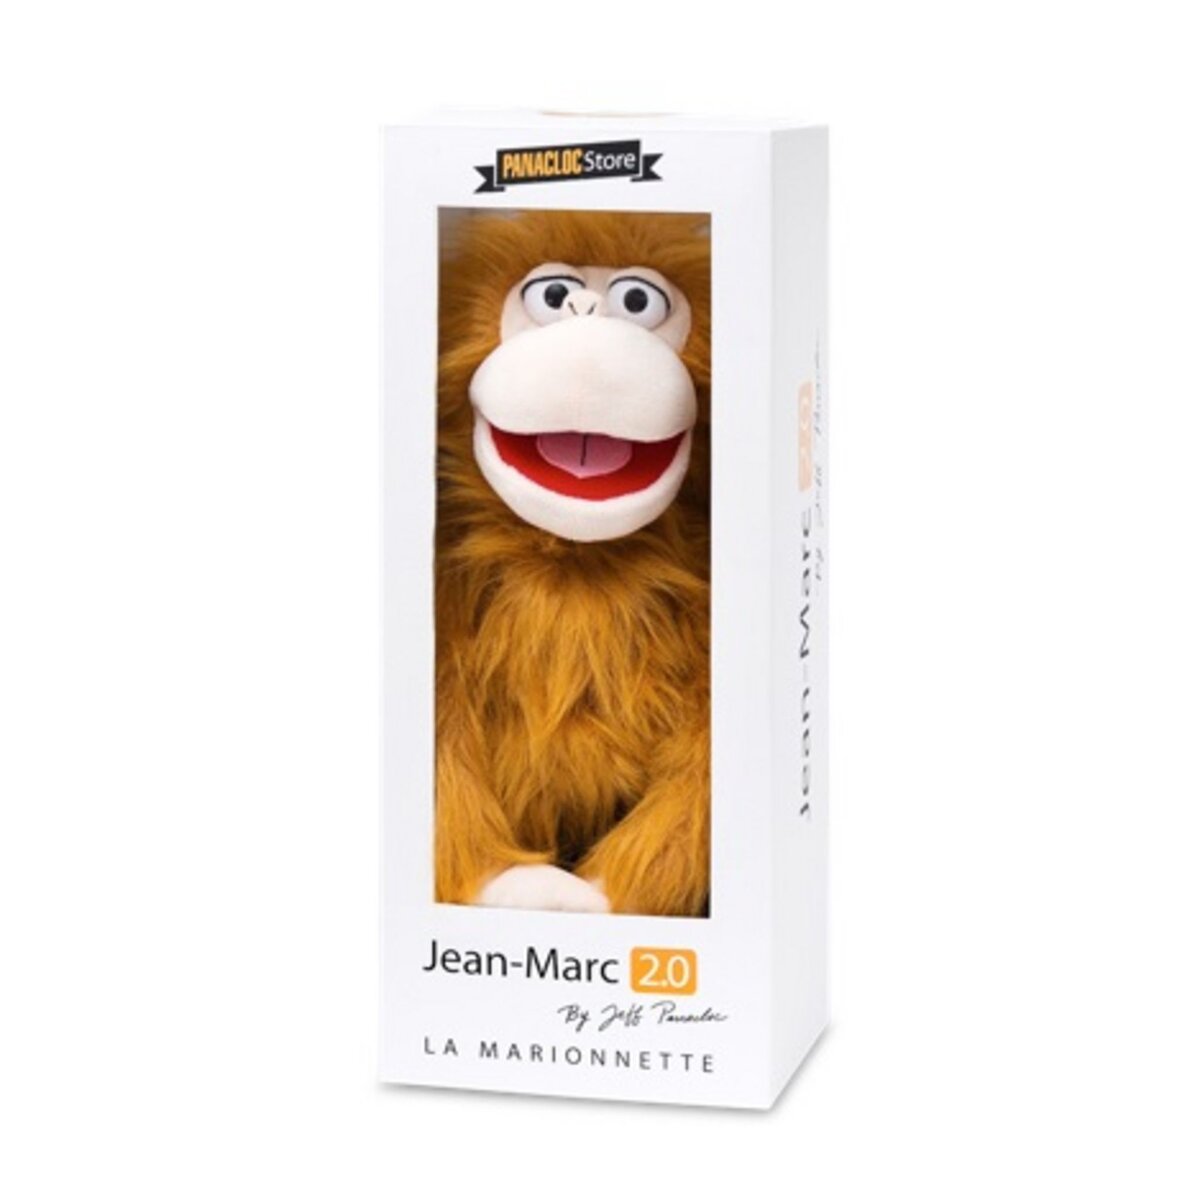 Marionnette Jean-Marc 2.0 - Jeff Panacloc